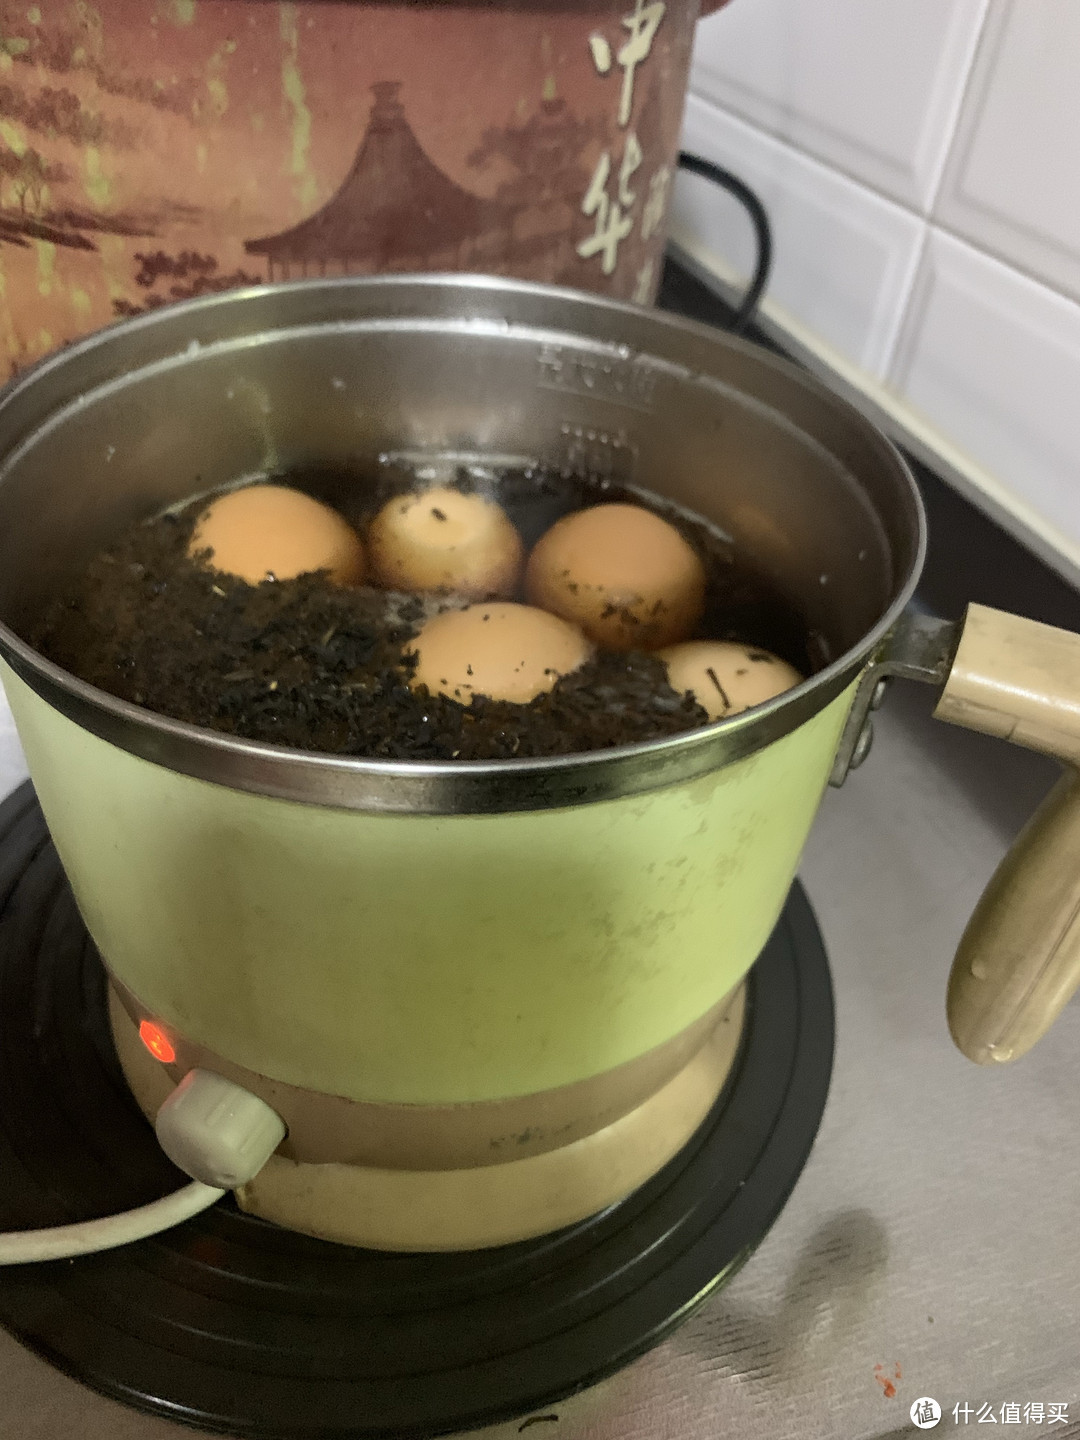 茶叶罐子里的茶叶沫沫不要扔，可以用来煮茶叶蛋哦！